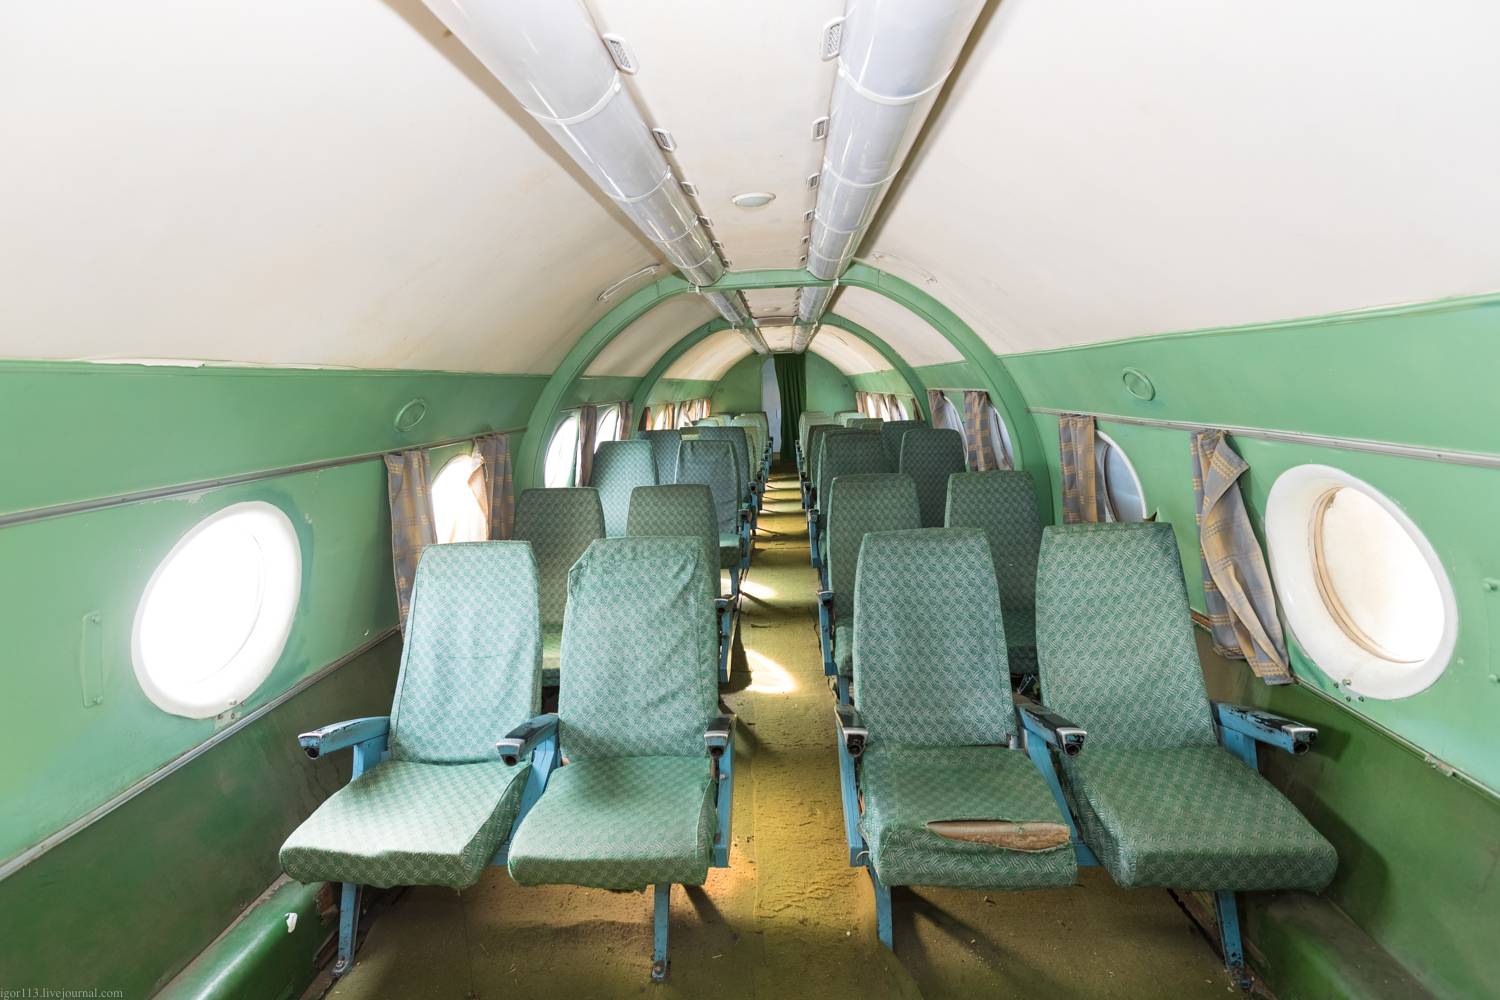 Советский пассажирский самолёт ту-124: история создания, характеристики и модификации